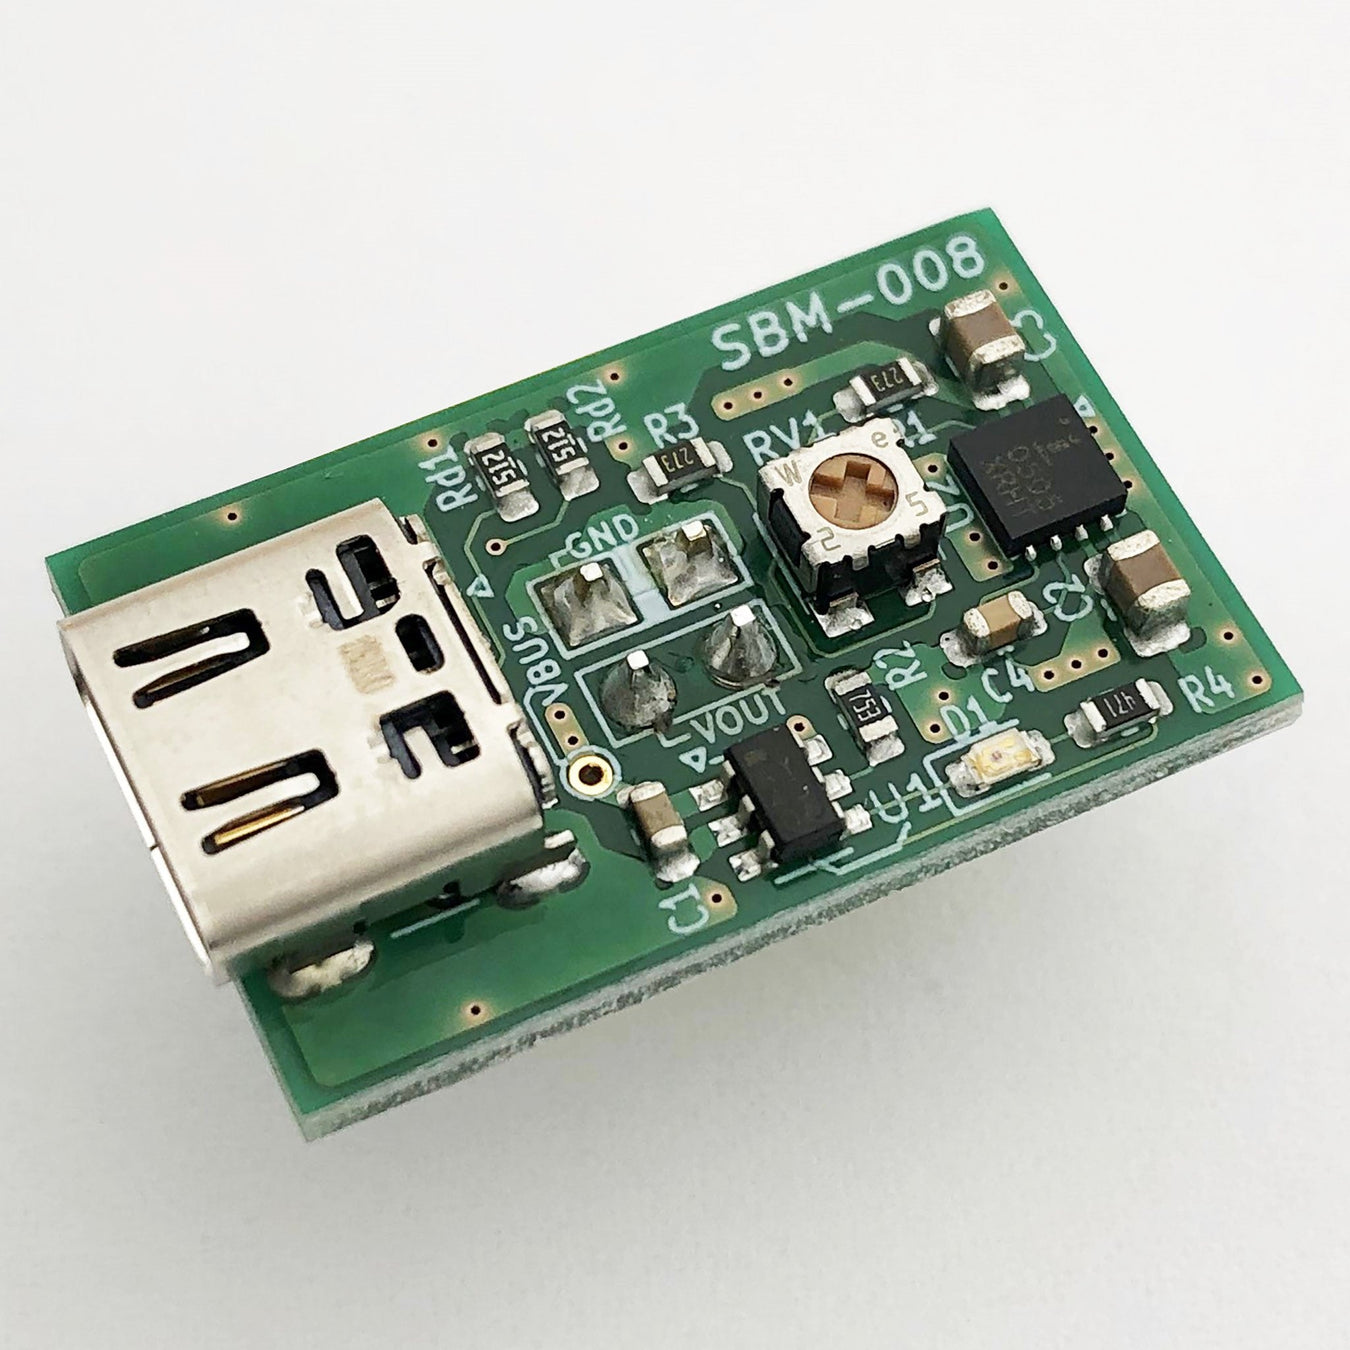 写真：ブレッドボード用USB Type-C電源ボード（SBM-008）：本体外観